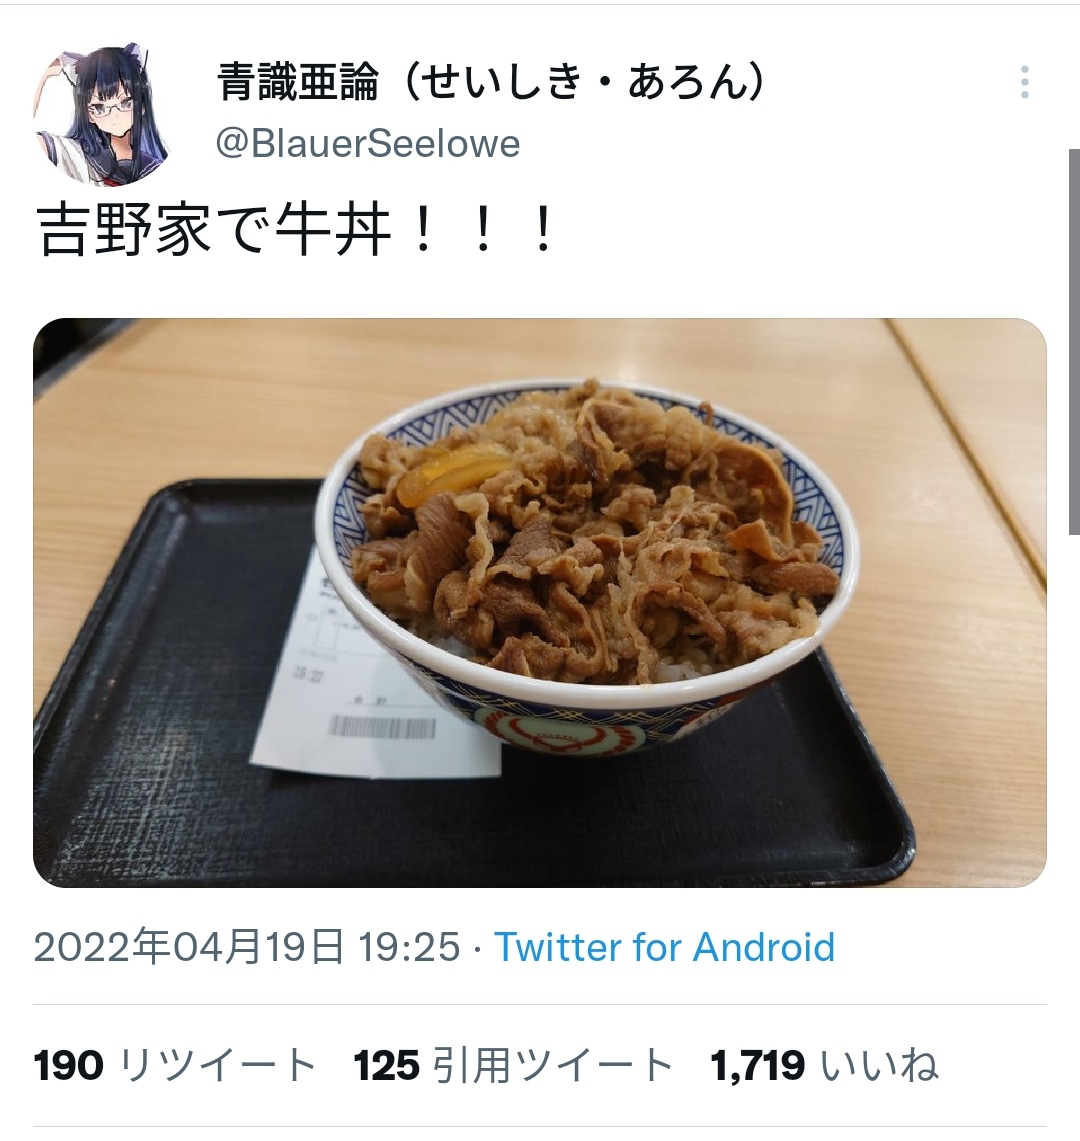 ツイッタラー「吉野家で牛丼食べた！」→フェミ「ｷﾞｬｵｯ!ｷﾞｬｵｯ!ｷﾞｬｵｵｵｵｵ!!!」\n_1